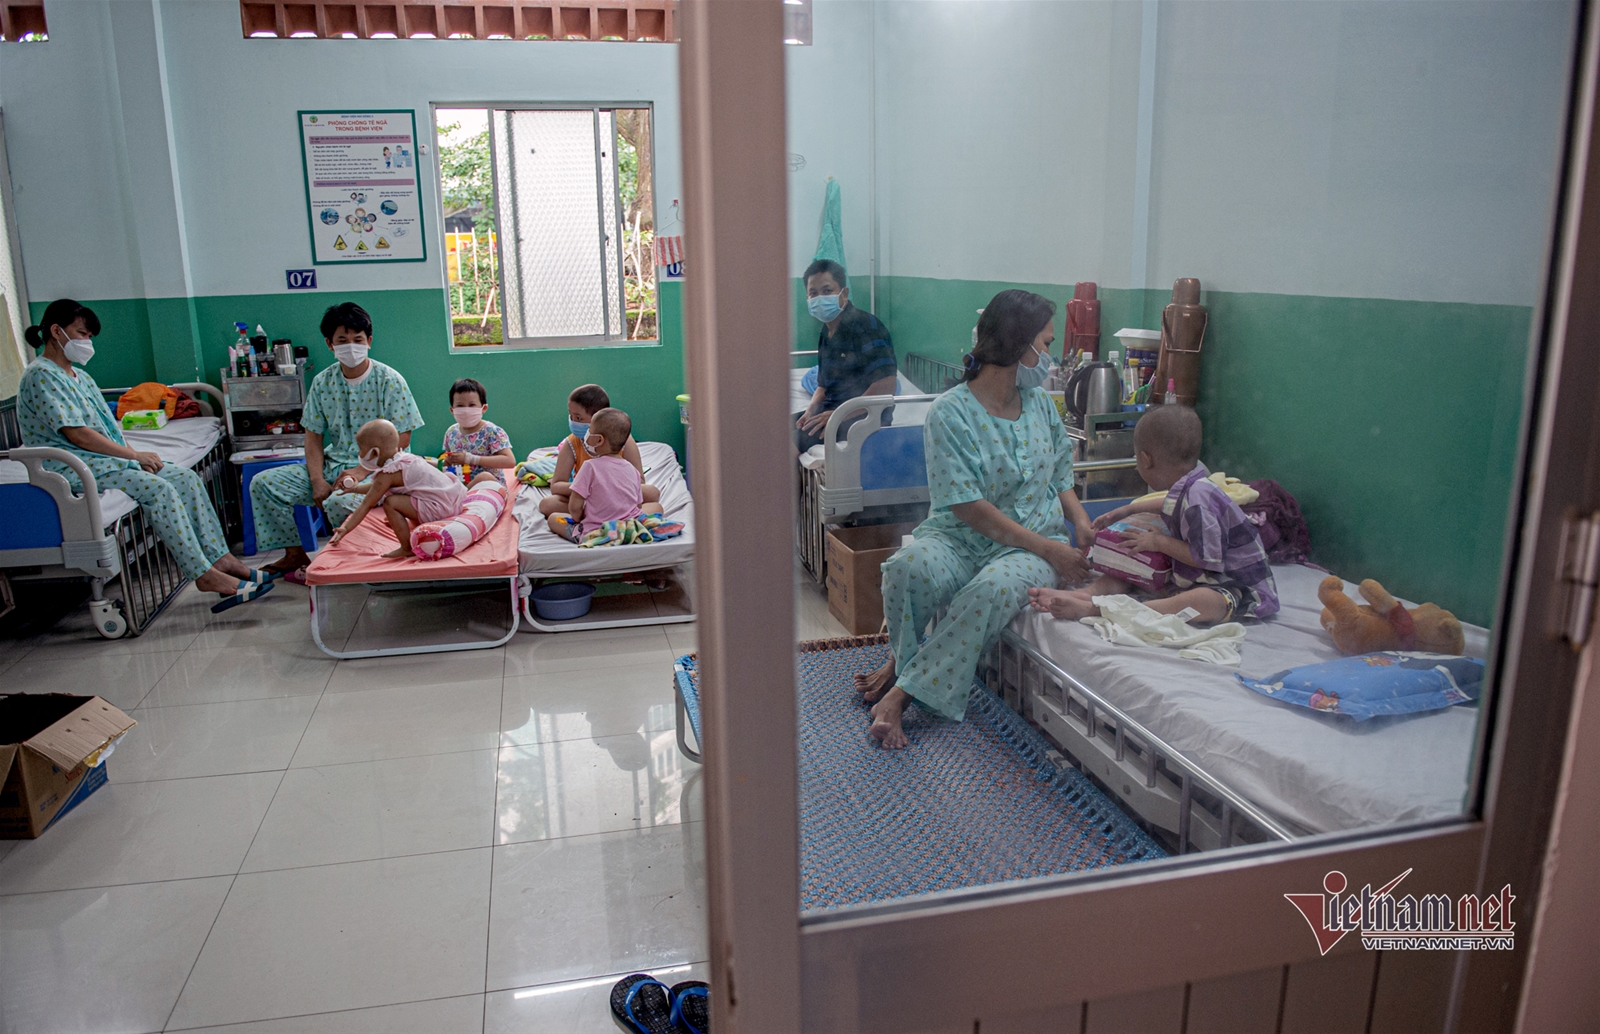 Lý do Việt Nam chưa tiêm vắc xin Covid-19 cho trẻ em ở thời điểm hiện tại.